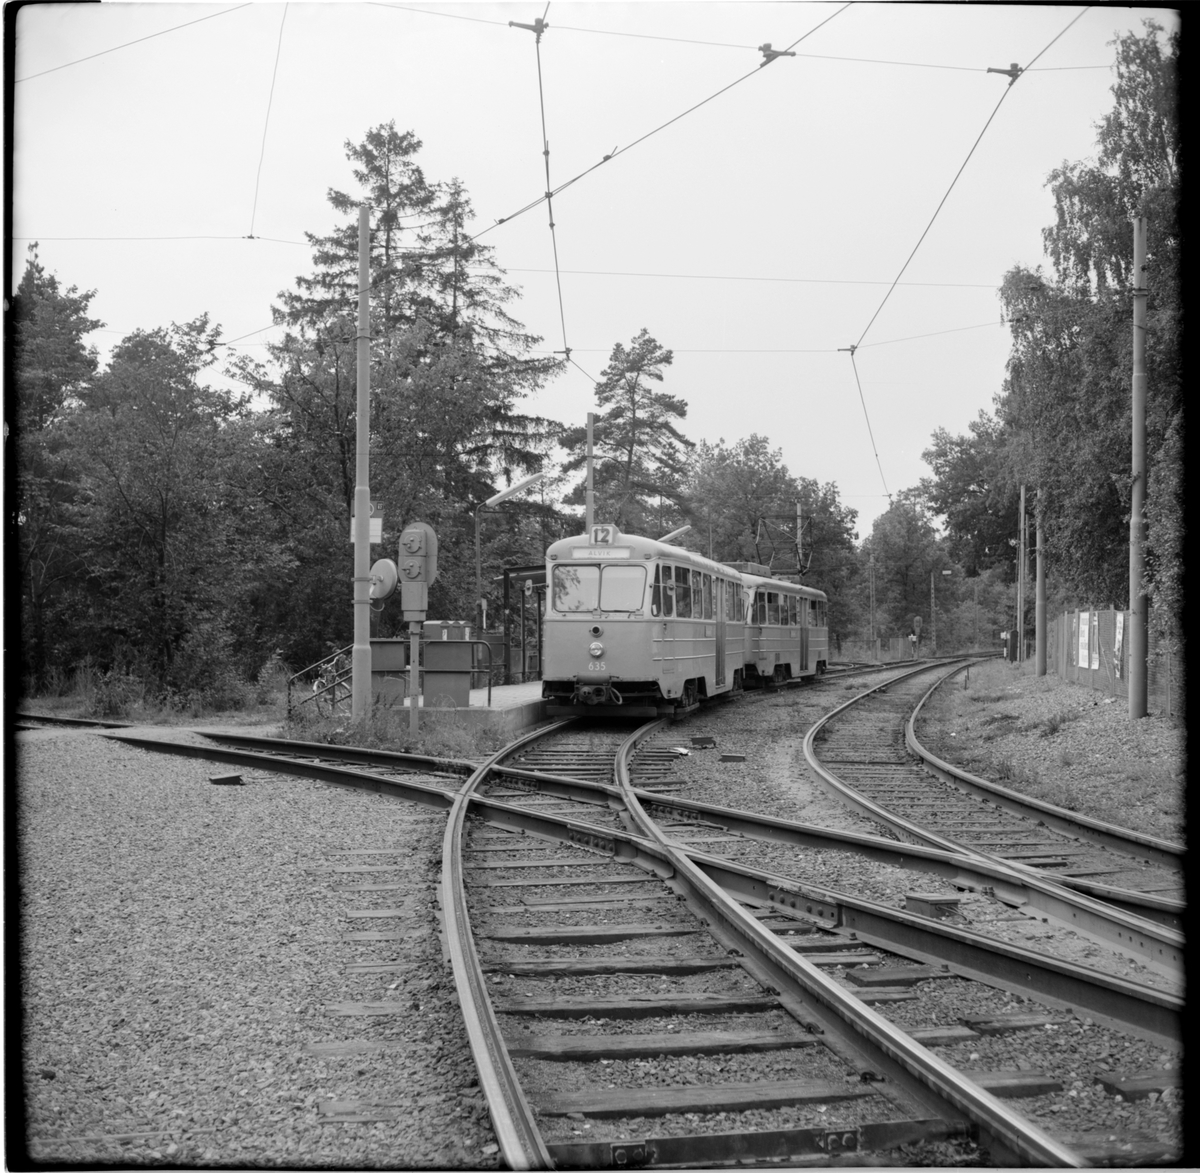 Aktiebolaget Stockholms Spårvägar, SS B24 635 "ängbyvagn" linje 12 Alvik på hållplats vid Gladbacken / Orrspelsvägen.